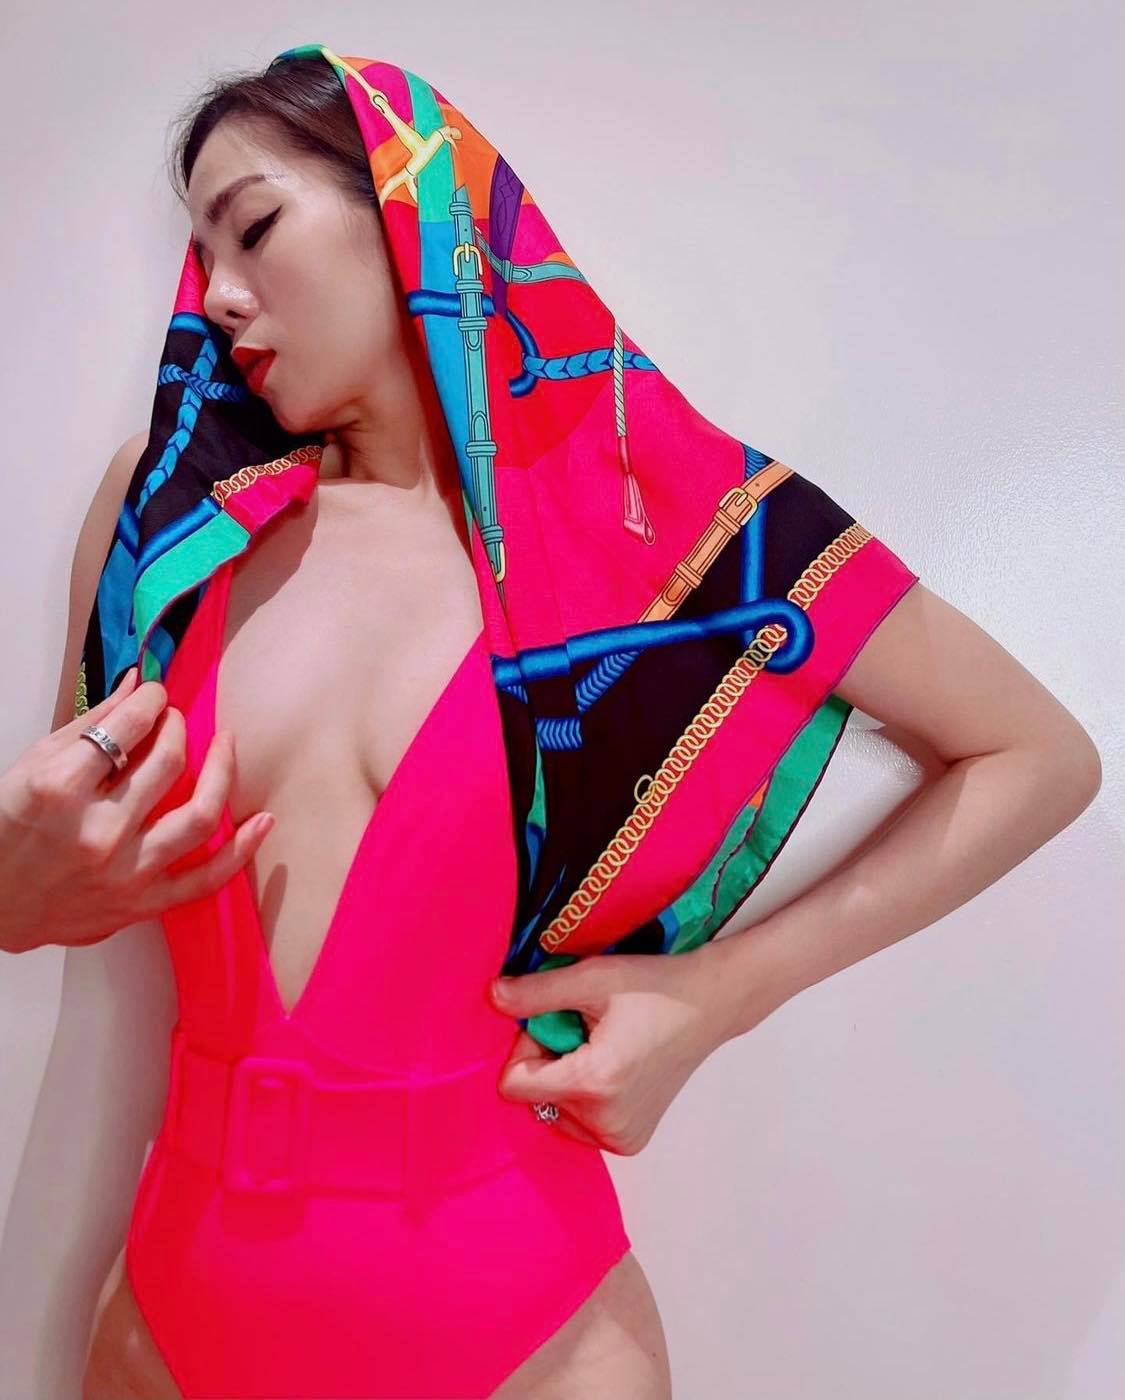 Người đẹp diện lên mình swimsuit của thương hiệu Maio Decote Rosa đến từ Brazil có giá ngót nghét khoảng 5 triệu đồng, kết hợp với khăn lụa họa tiết của thương hiệu Hermes.